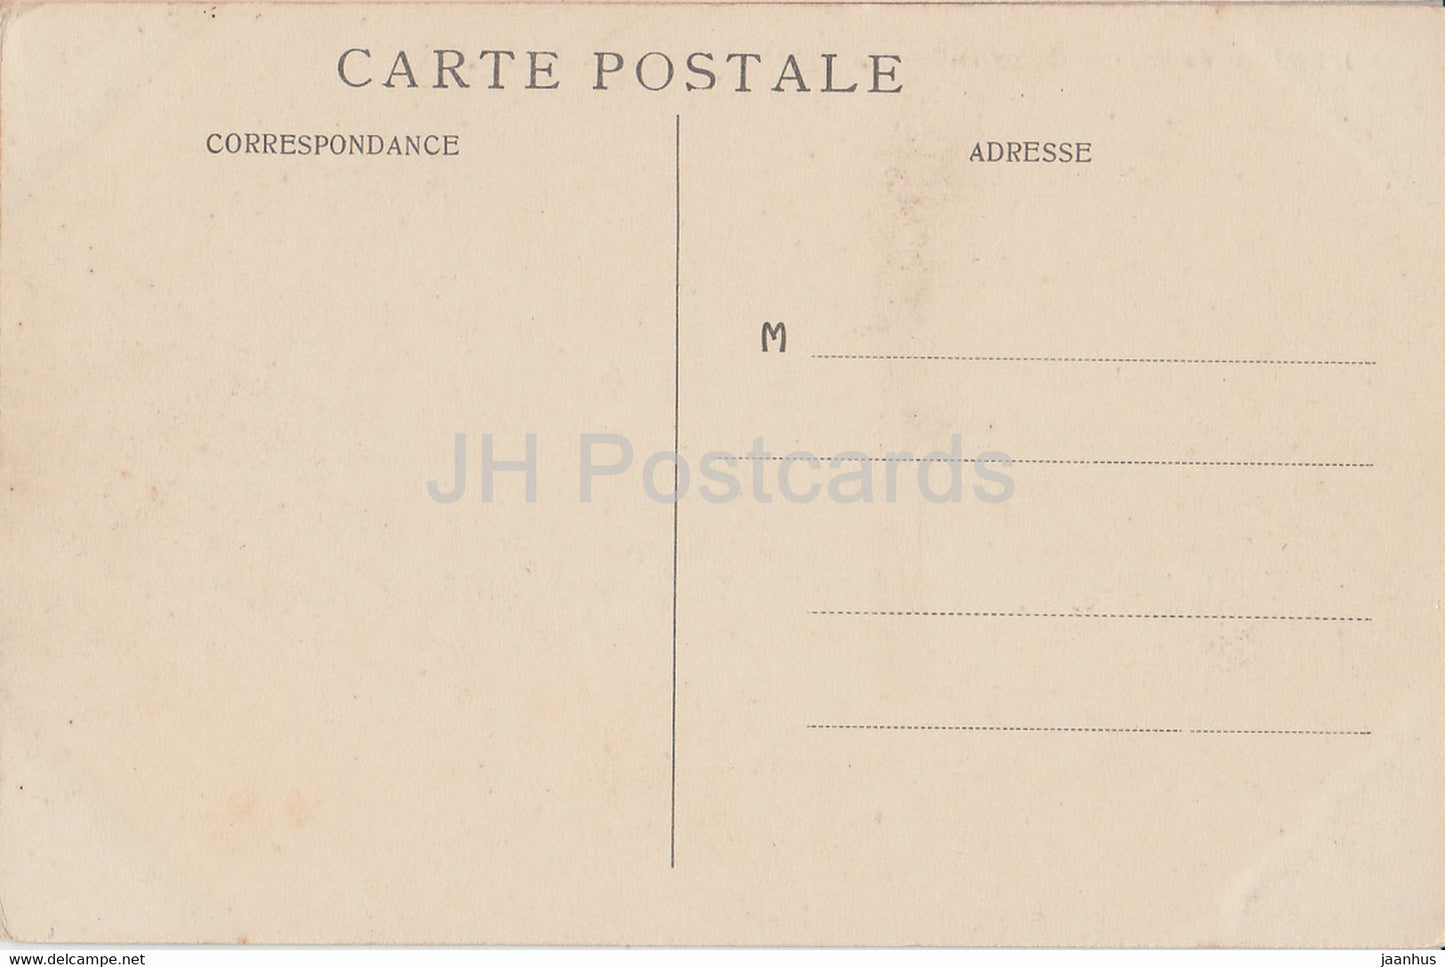 Environs de Laon - Coucy le Chateau - Vue Generale du Chateau - castle - 1 - old postcard - France - used